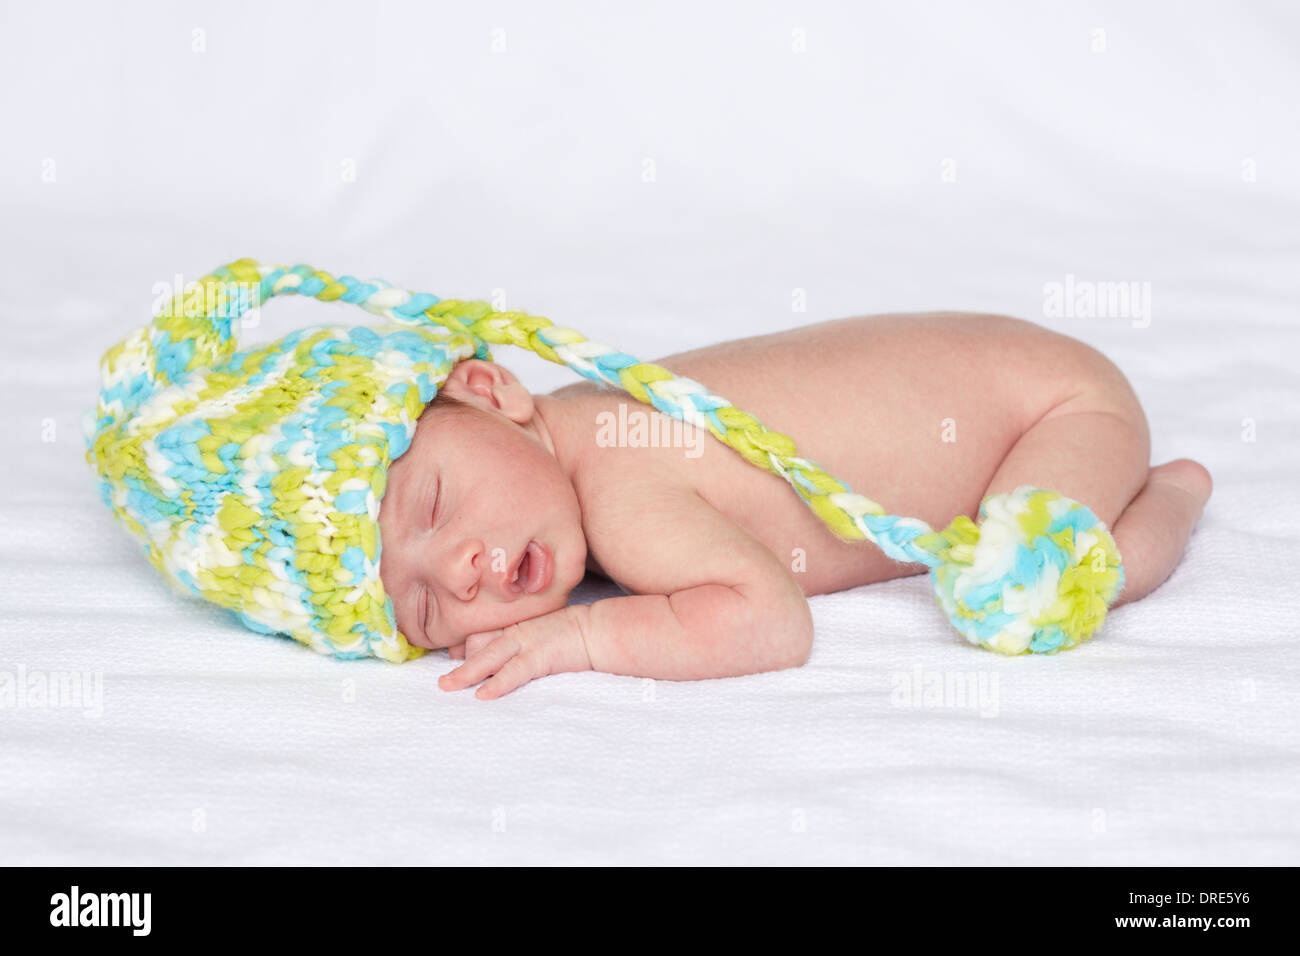 Newborn baby in knitted beanie Stock Photo